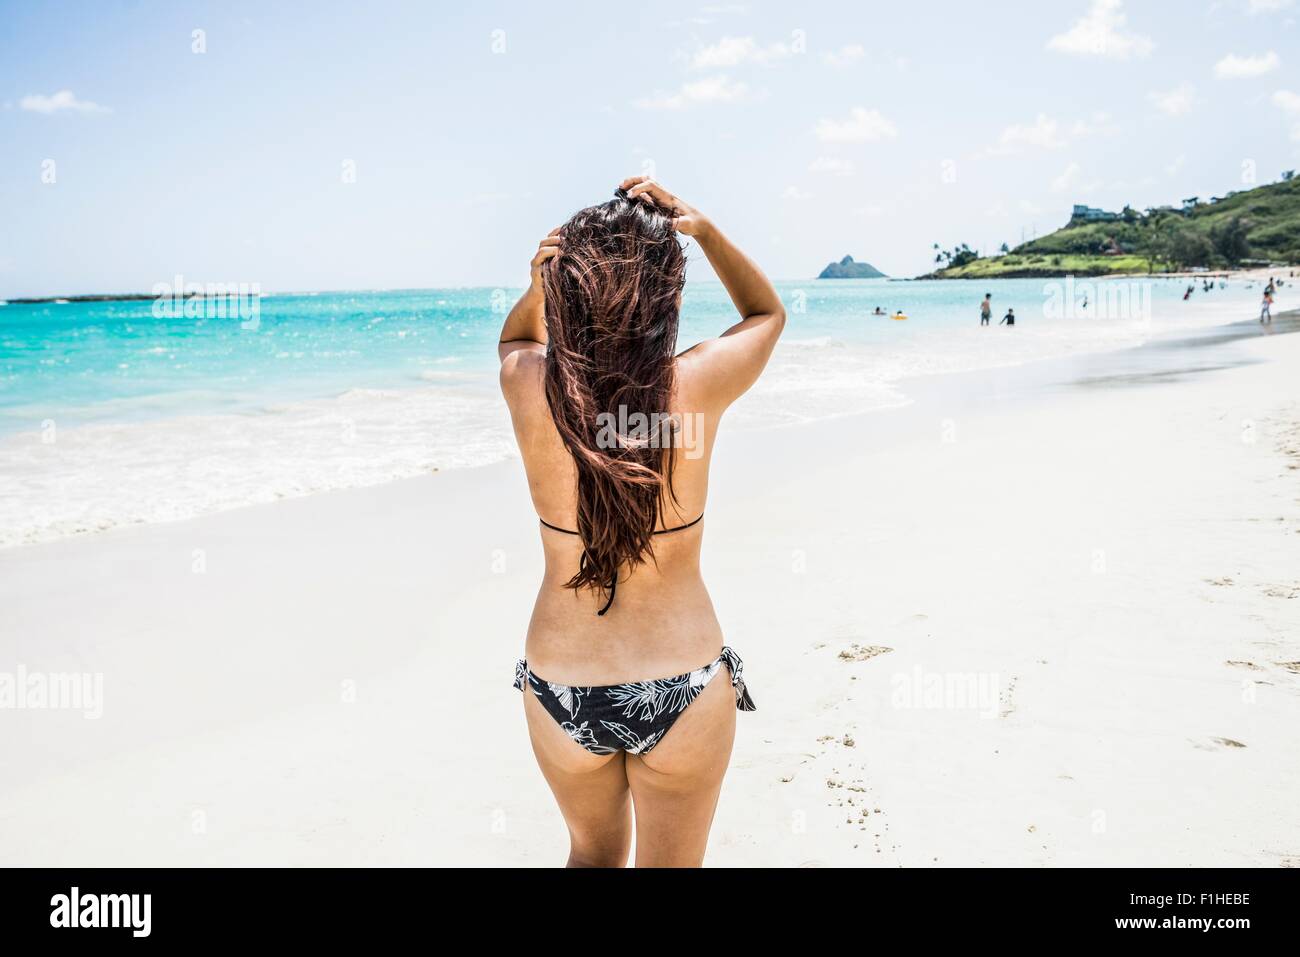 Rear view of young woman wearing bikini on Kailua beach, Oahu, Hawaii, USA Stock Photo